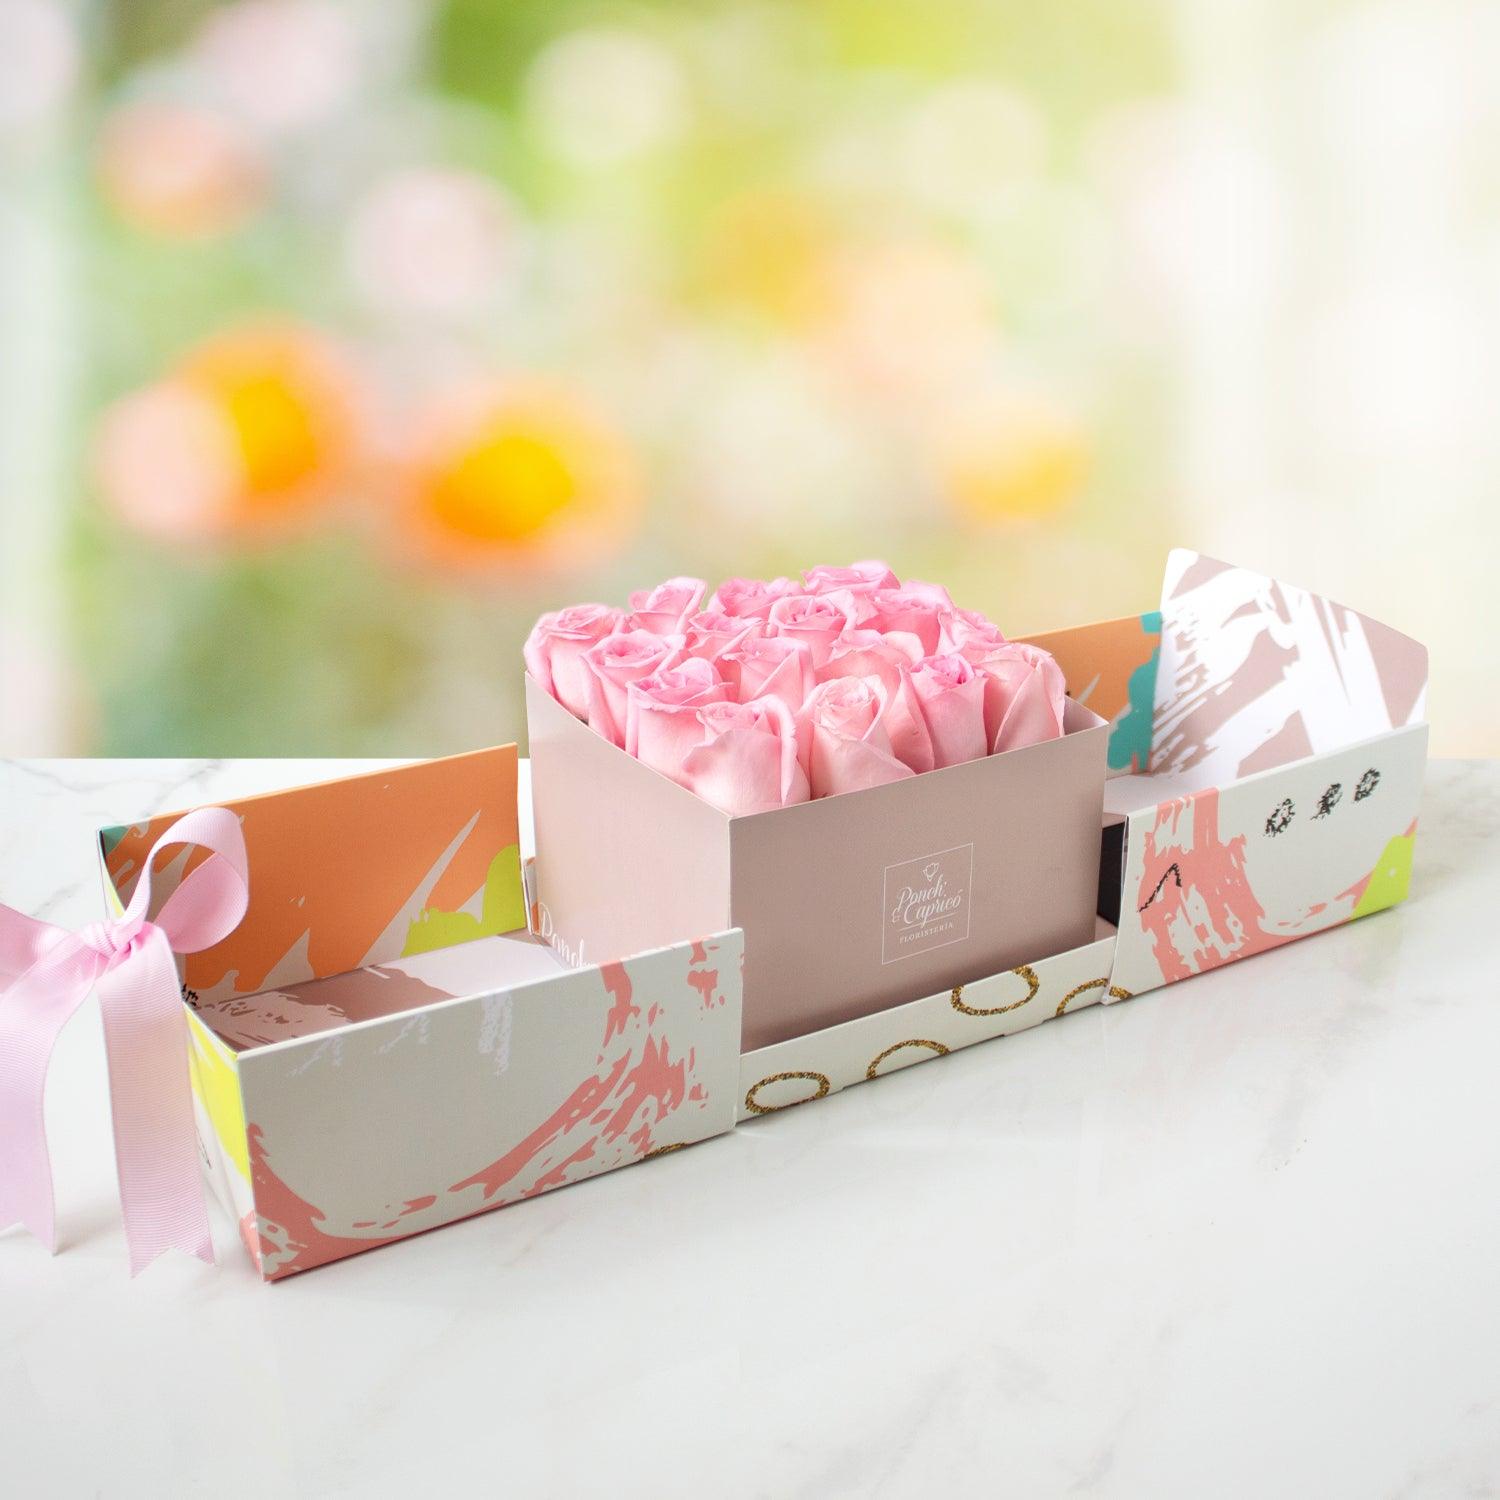 Sorprende de una manera especial con una caja sorpresa que contiene 16 rosas del color de tu elección.  La caja se entrega cerrada acompañada por un moño de tela, y una tarjeta personalizada.  ¡Es perfecto para regalar en cualquier ocasión!